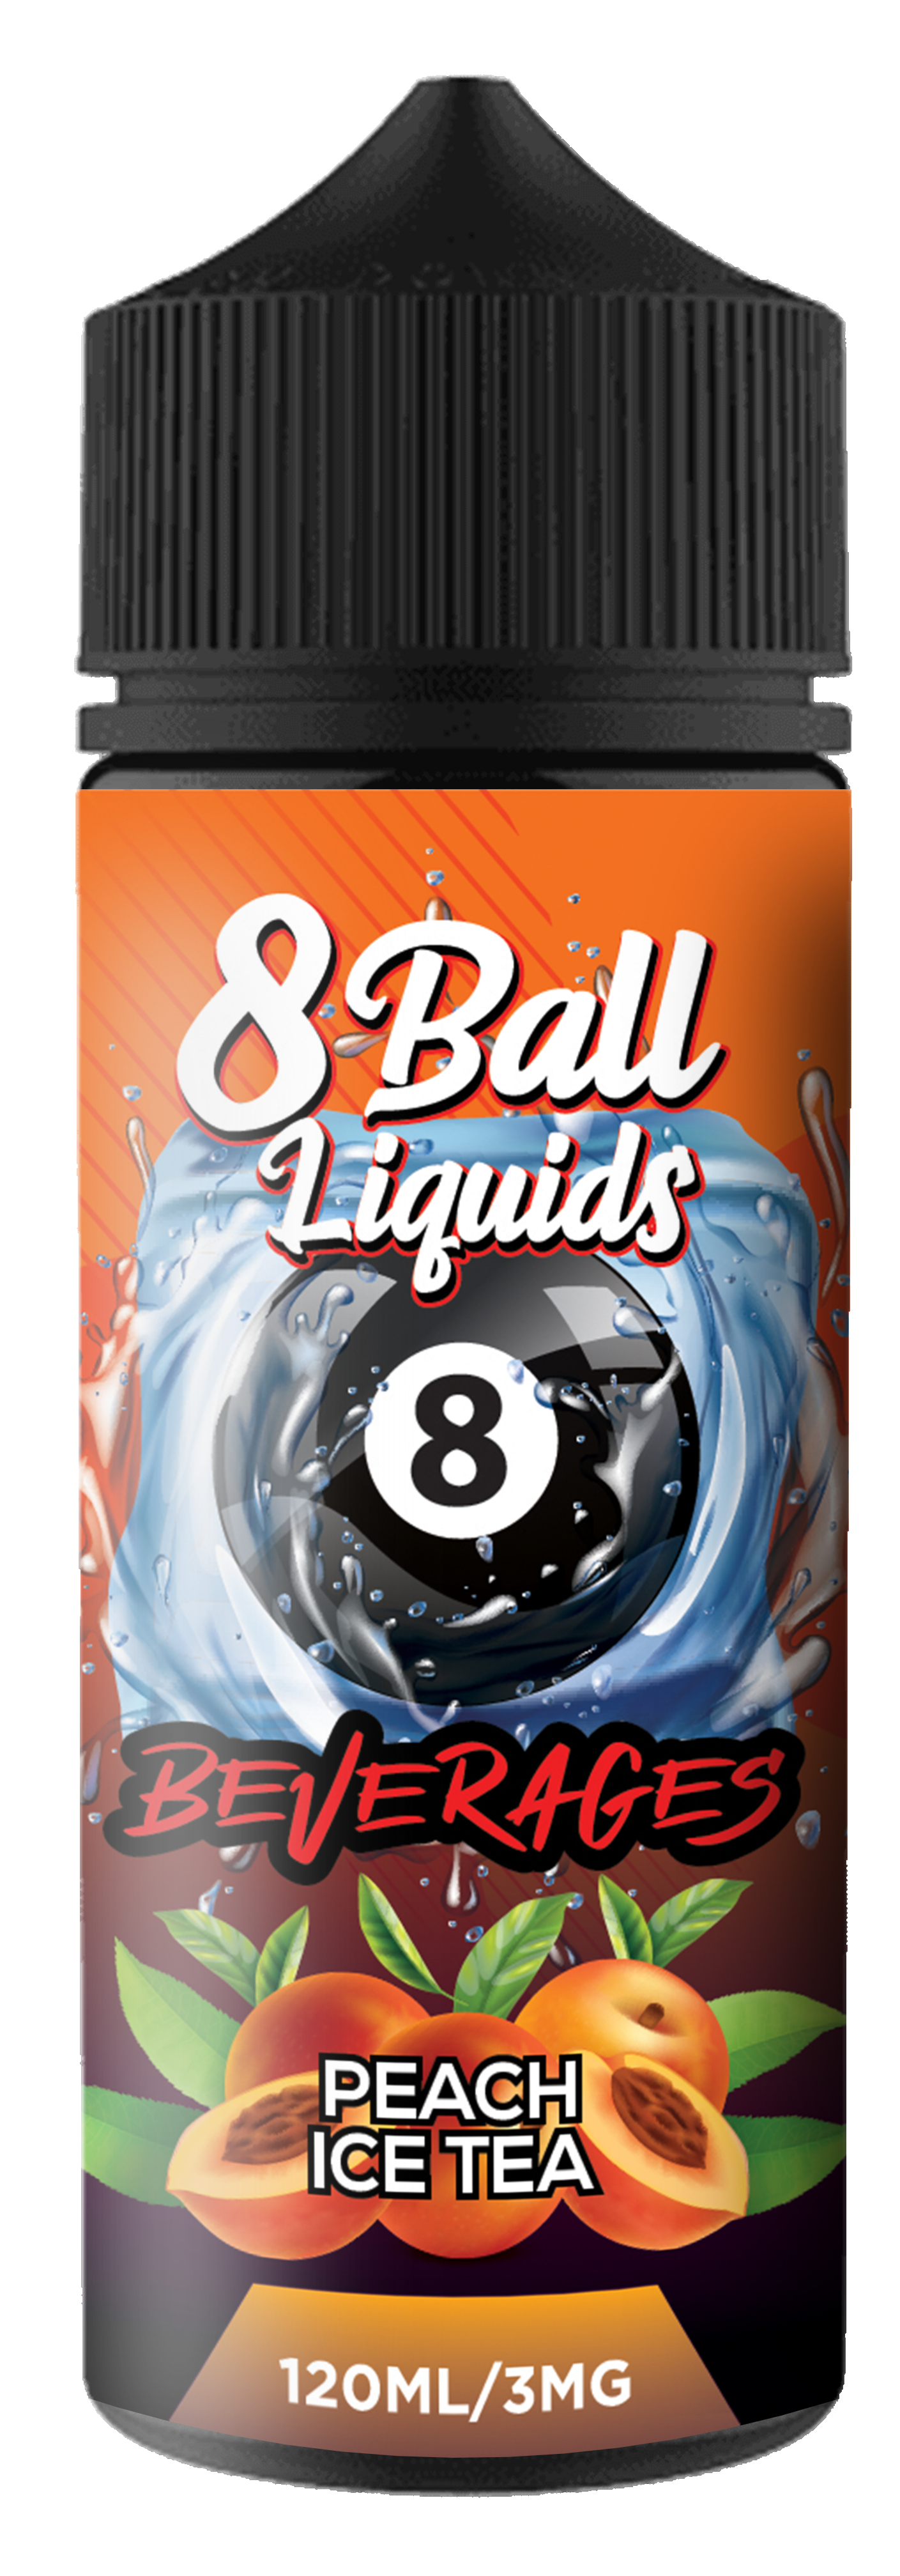 Beverages | Peach Ice Tea by 8 Ball Liquids 120ml